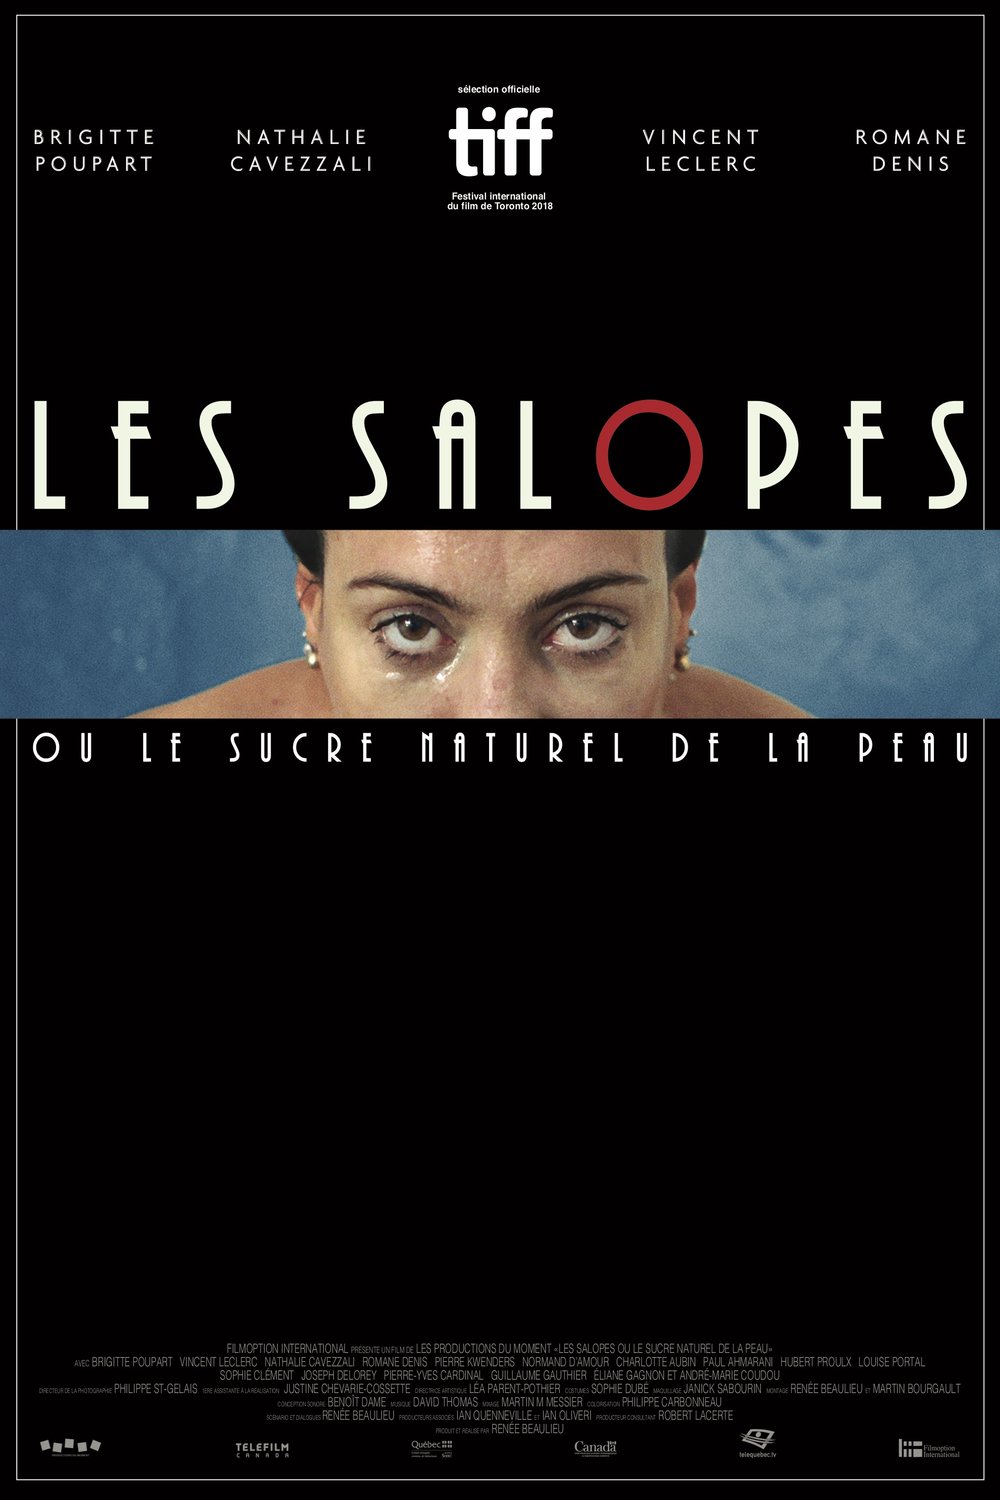 Poster of the movie Les salopes ou le sucre naturel de la peau